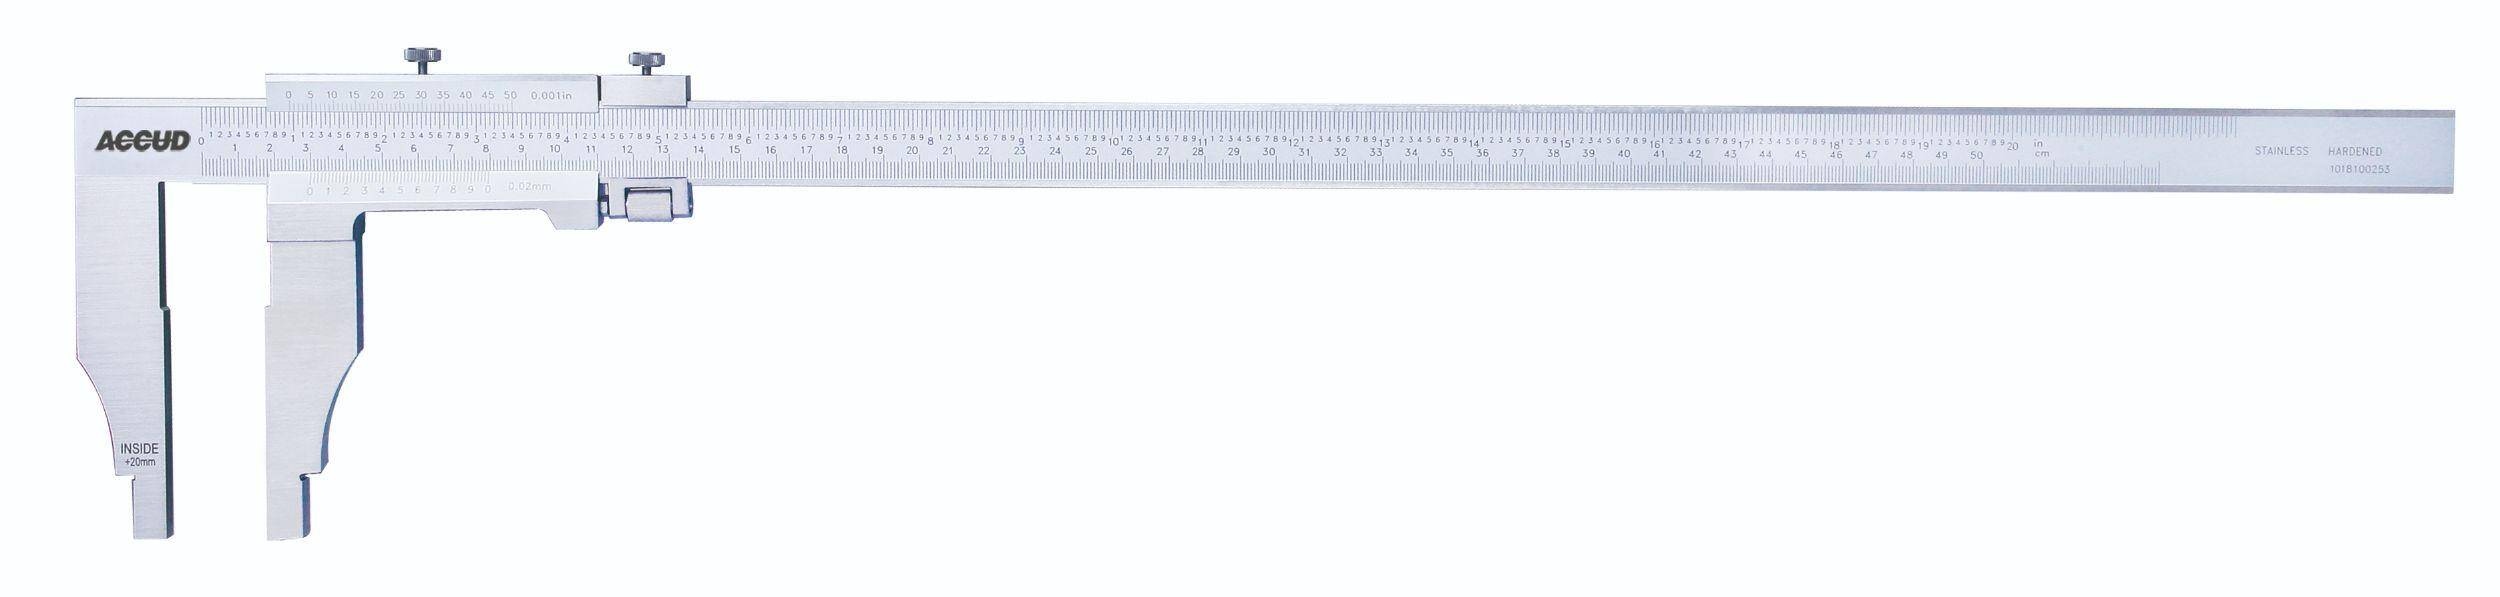 ACCUD suwmiarka analogowa 300/0.05 mm jednostronna długość szczęk 90 mm 128-012-51 (Zdjęcie 1)